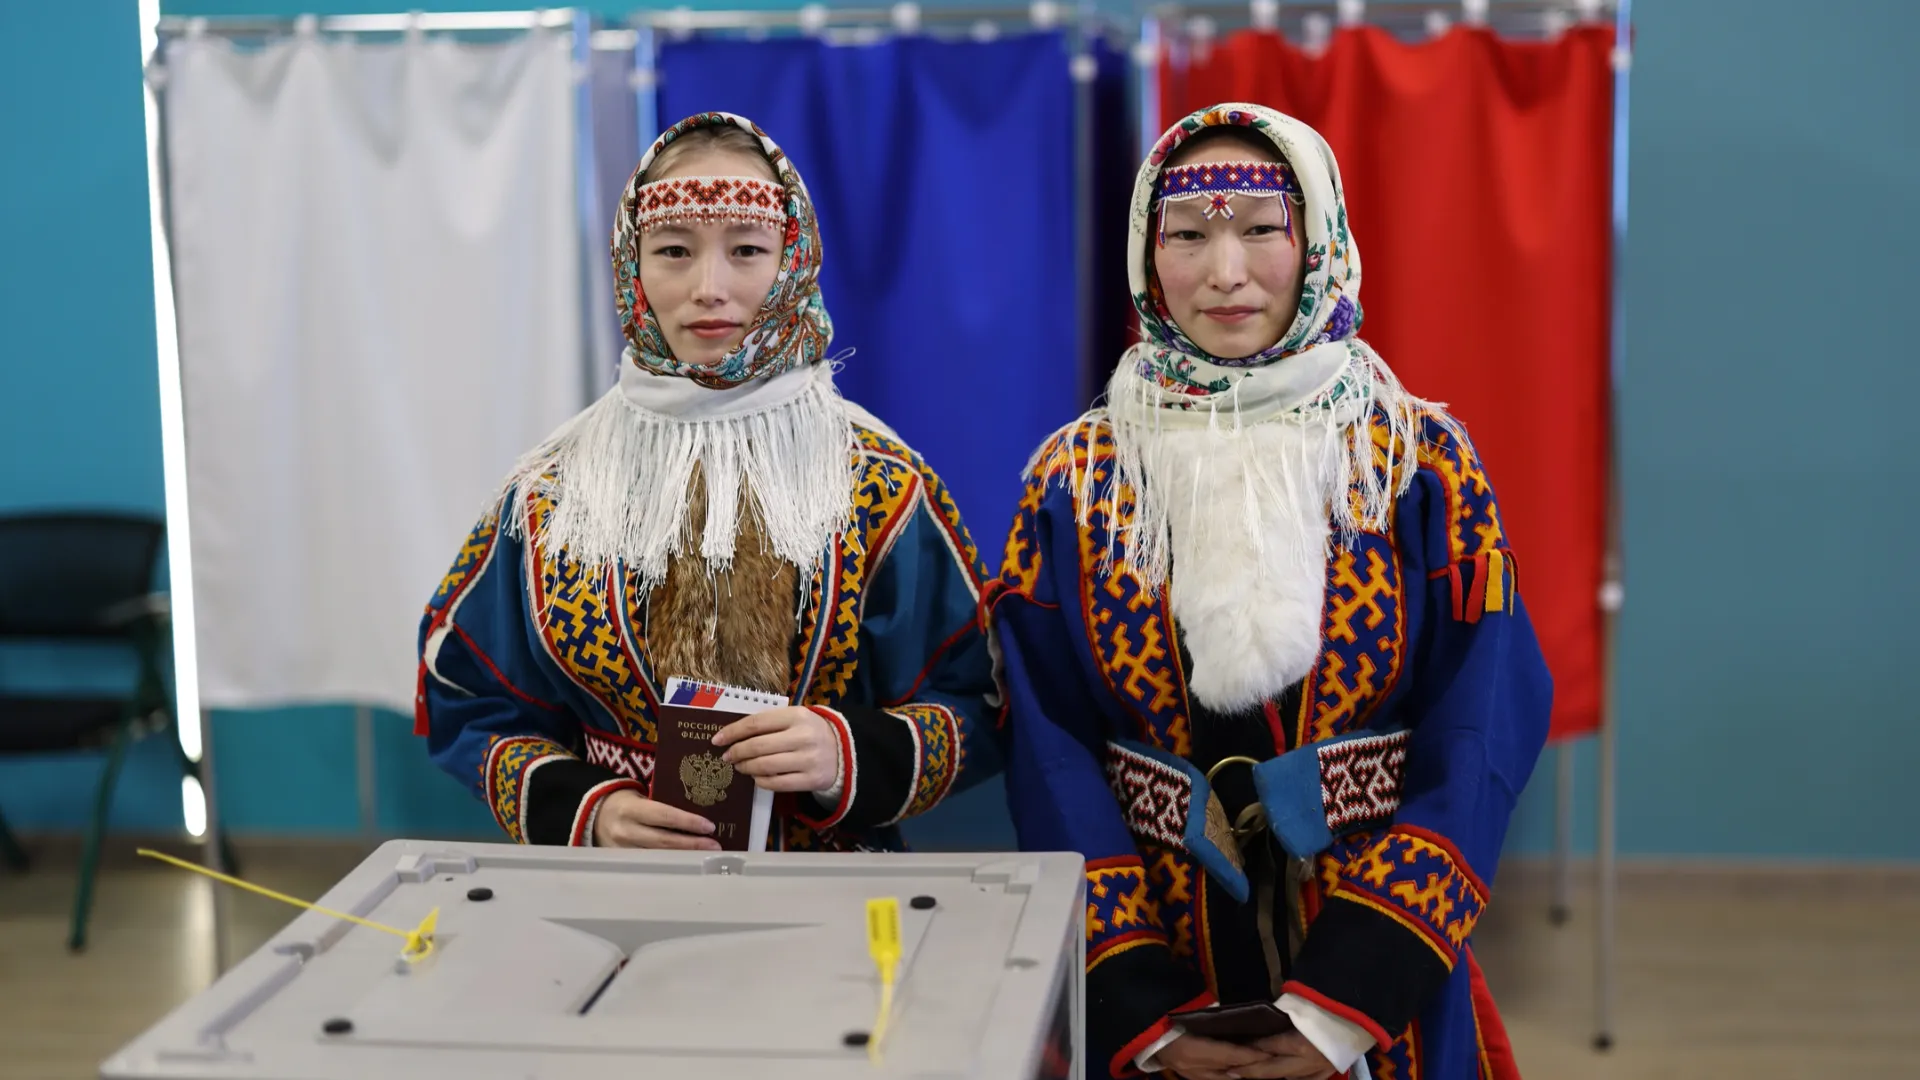 Сестры Худи пришли на избирательный участок в национальных нарядах. Фото: Сергей Зубков / «Ямал-Медиа»